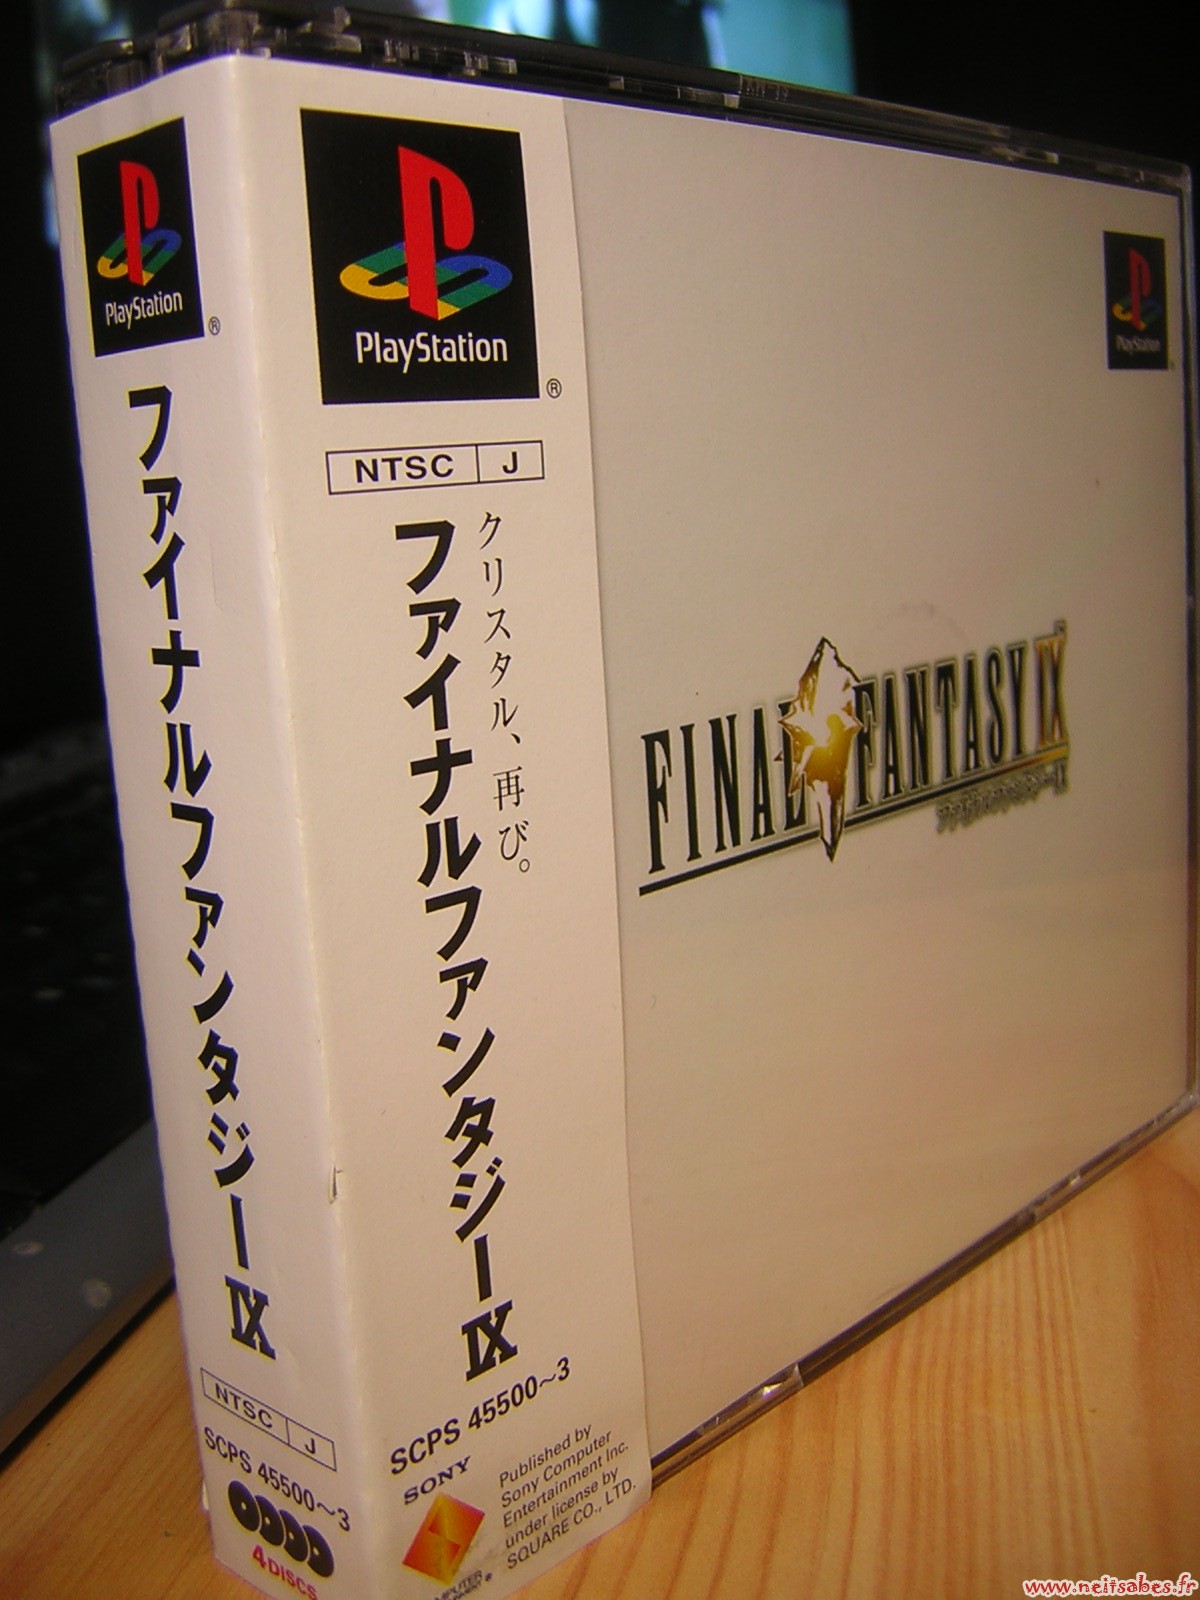 Rétro - Final Fantasy IX (PS1)